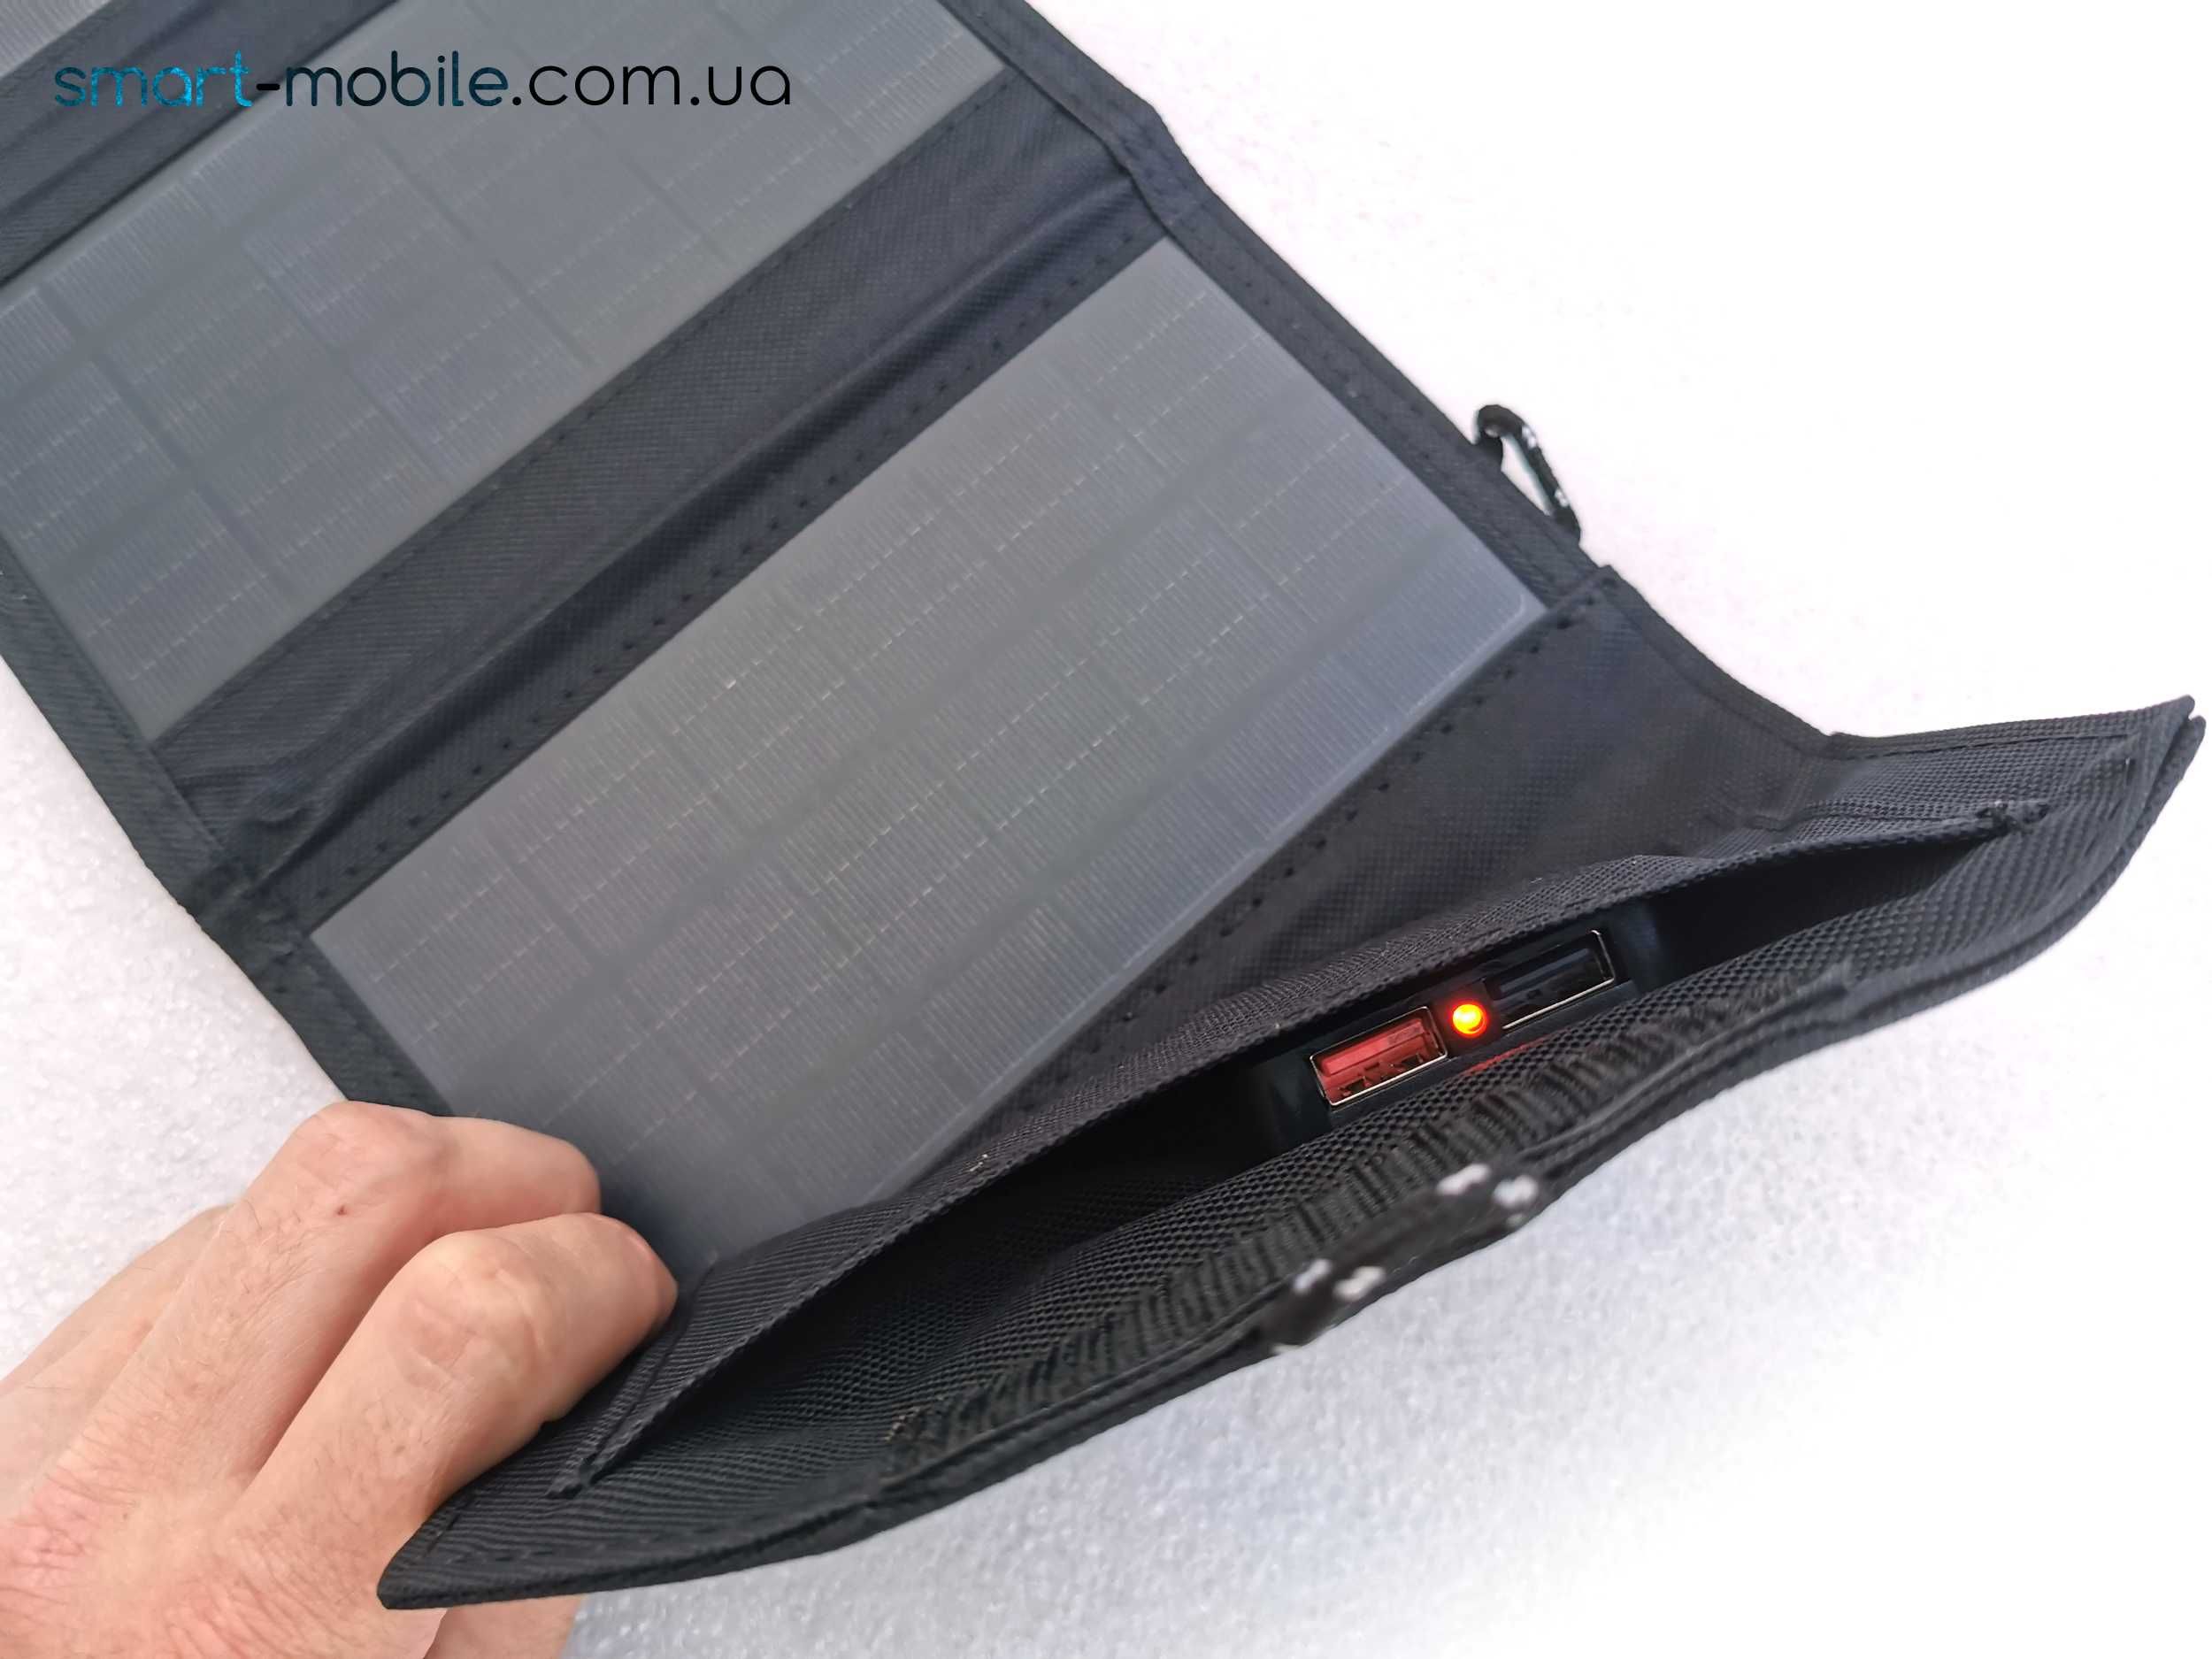 Солнечная портативная панель 30Вт - солнечная зарядка для телефона